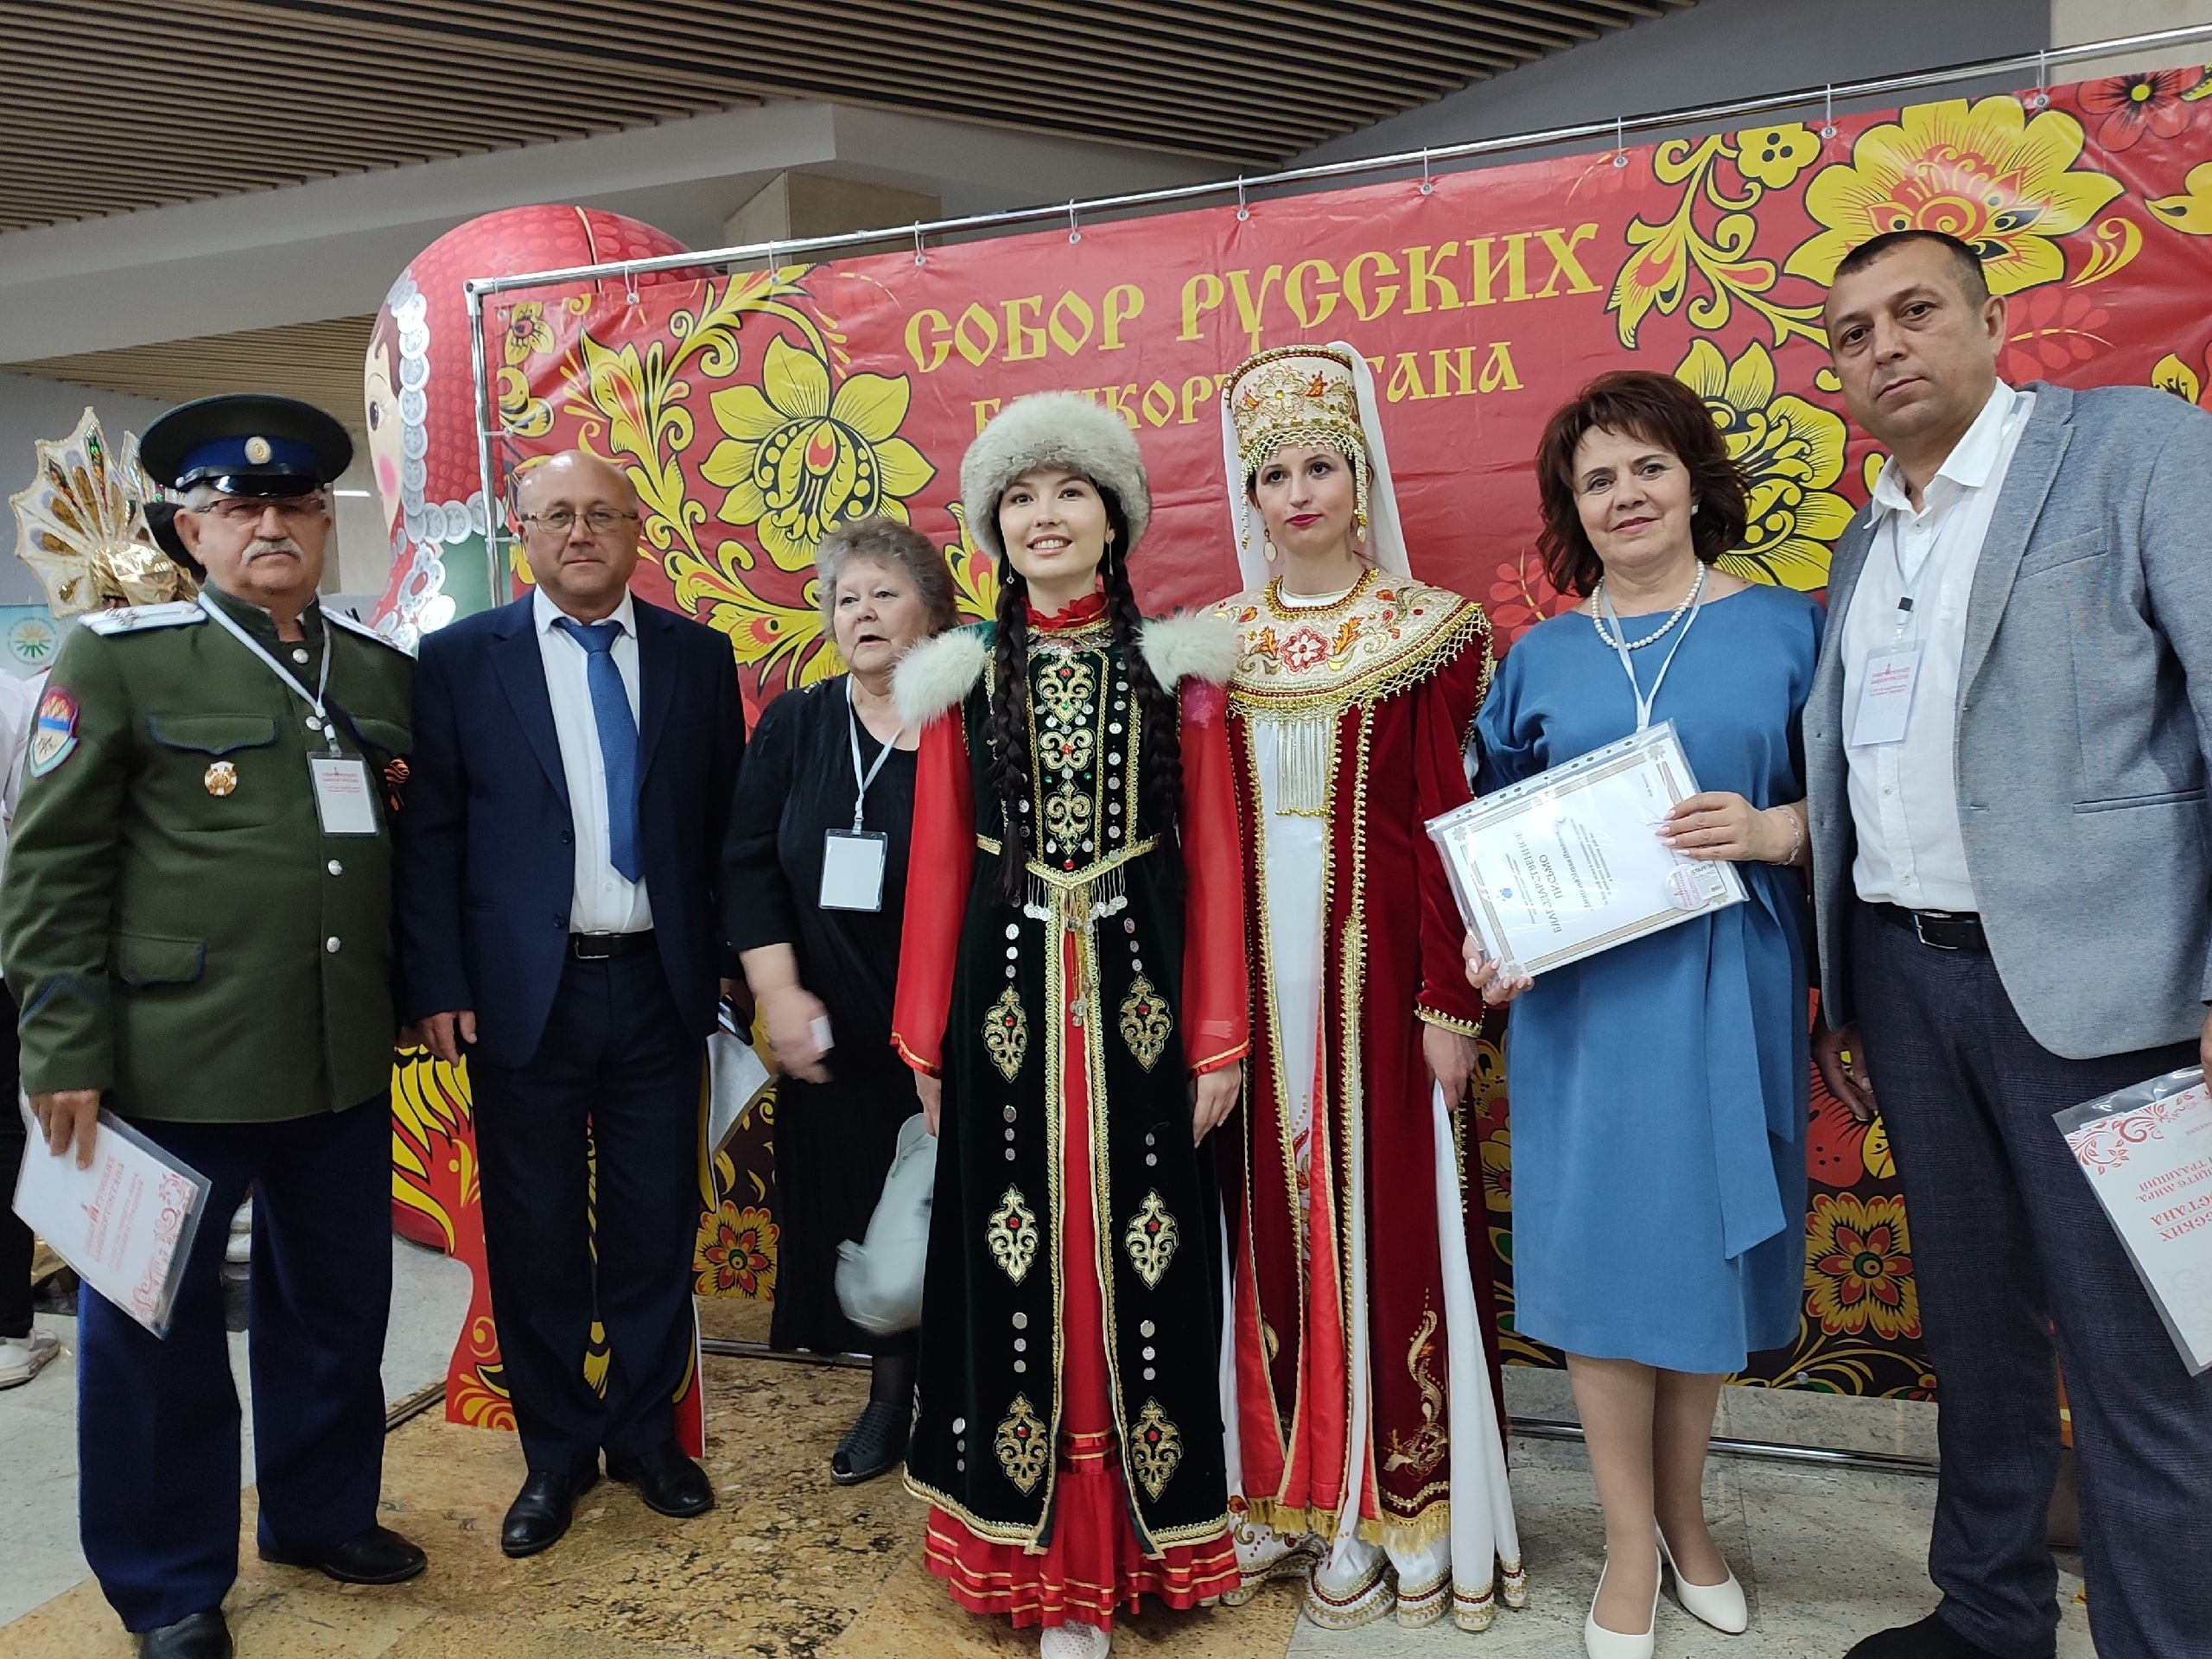 Отделение Собора русских Башкортостана в Мечетлинском районе стало обладателем второго места в республиканском конкурсе